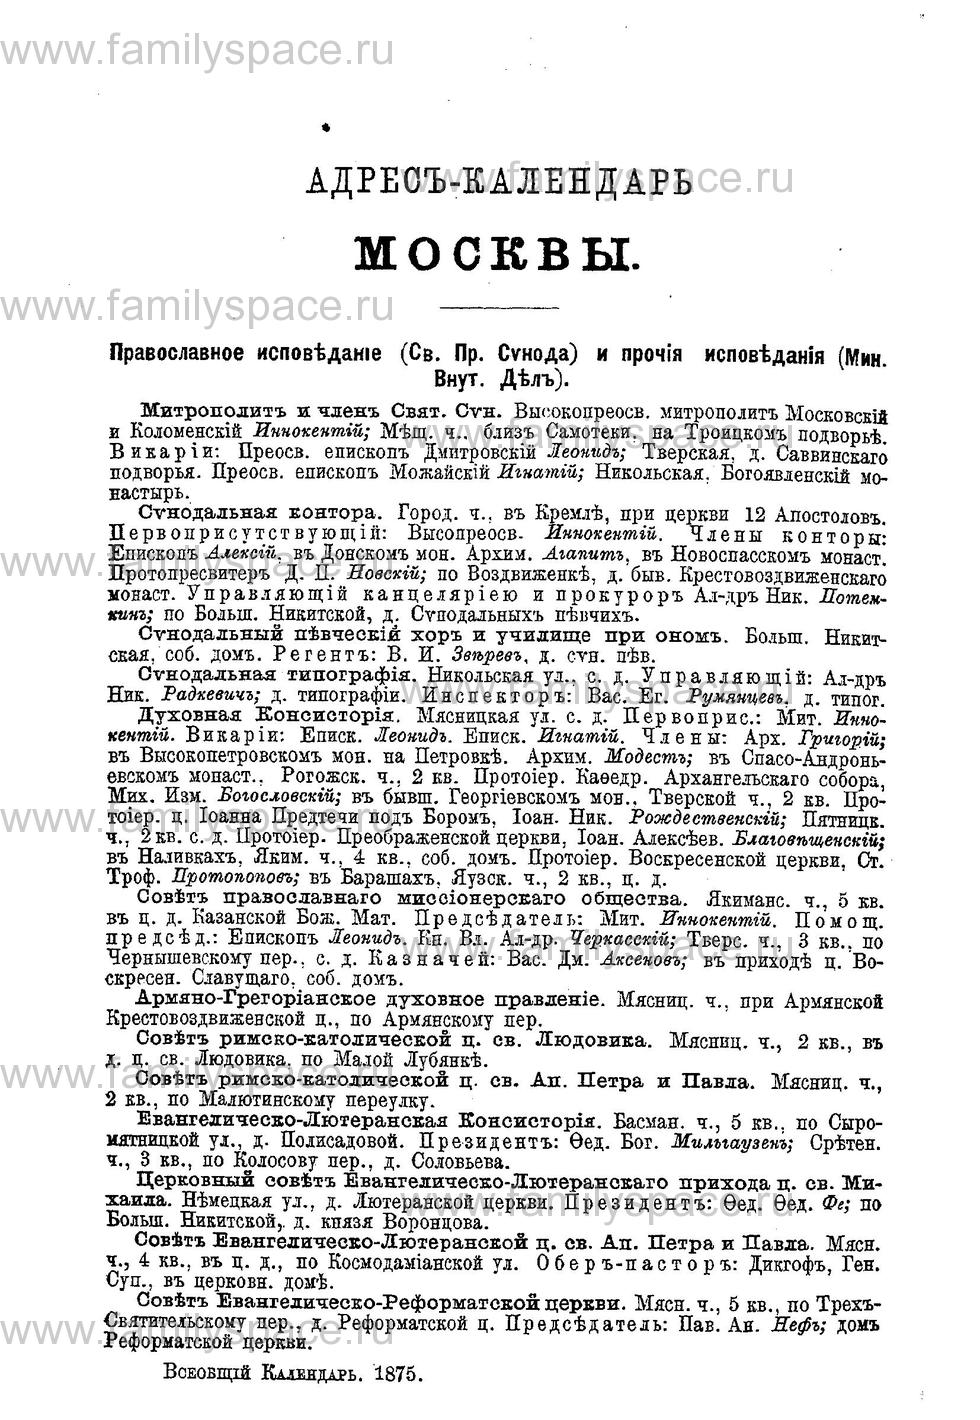 Поиск по фамилии - Адрес-календарь Москвы на 1875 год, страница 42